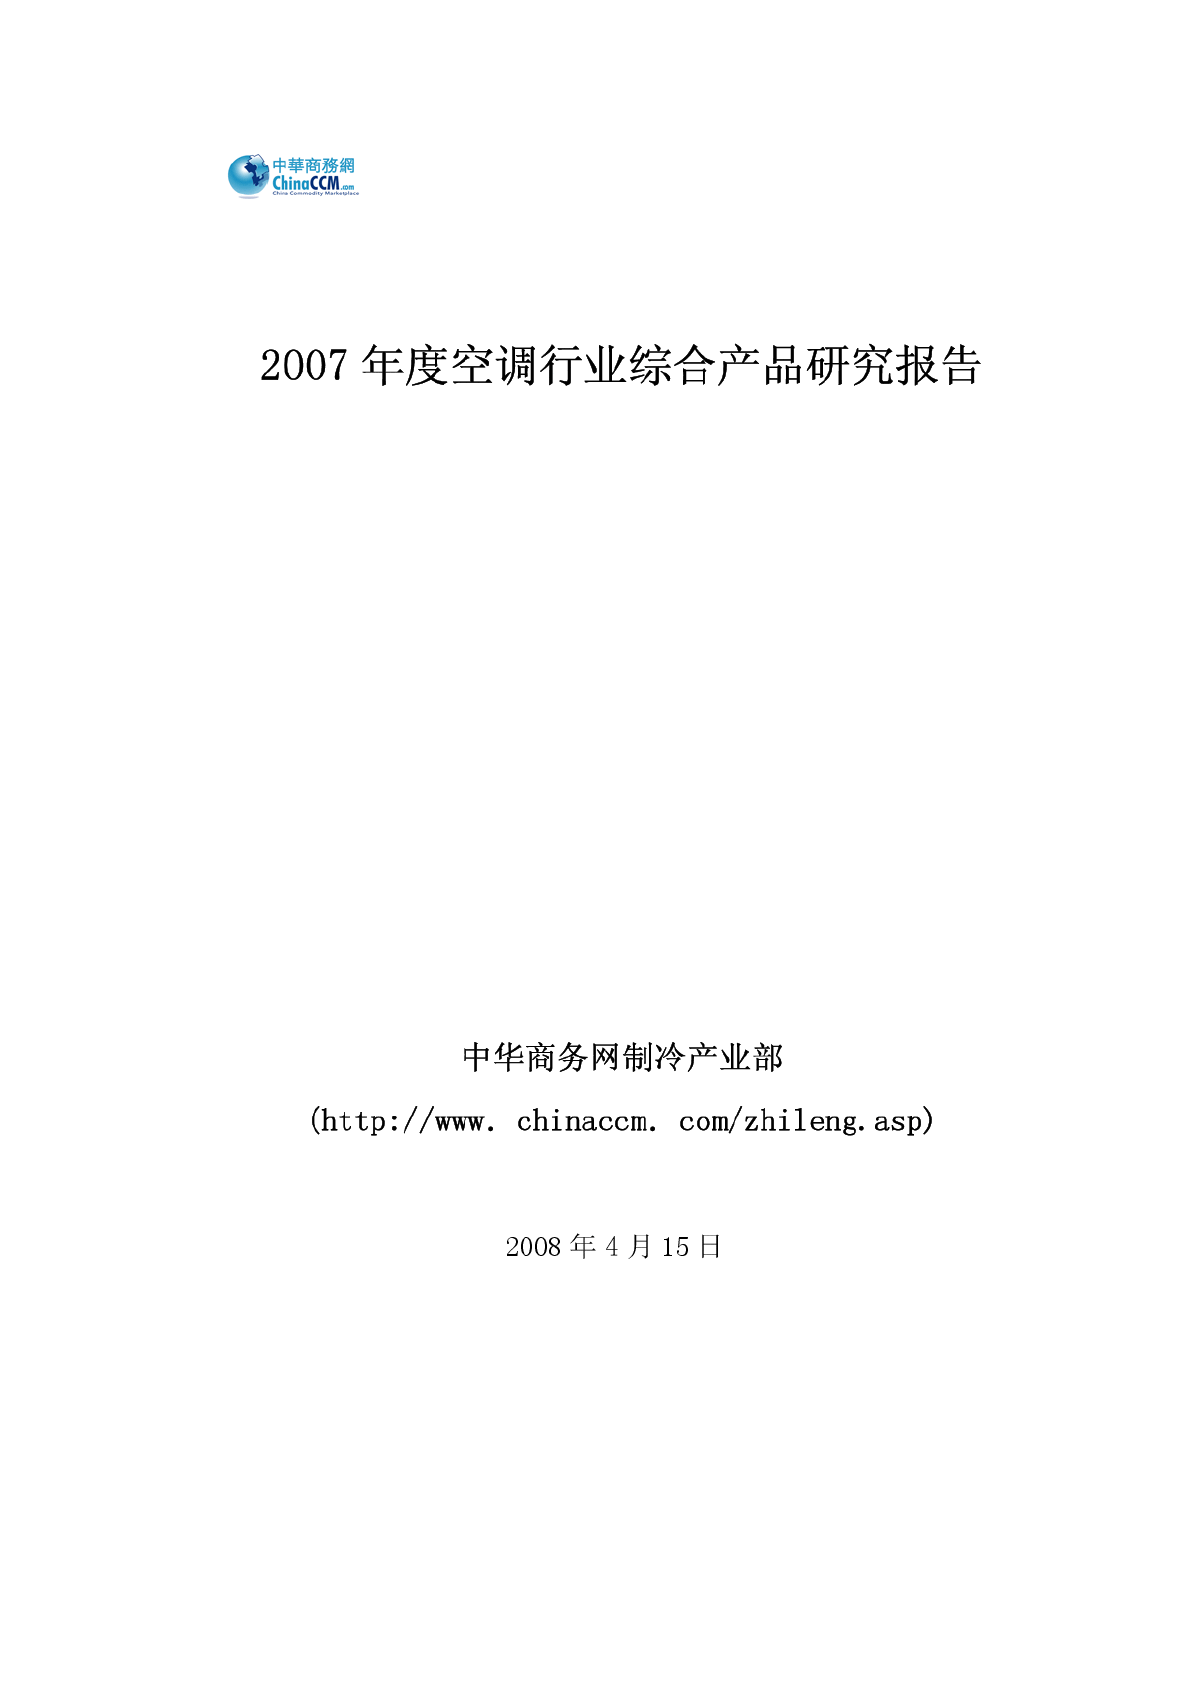 2007年度空调行业研究报告-CCM-图一